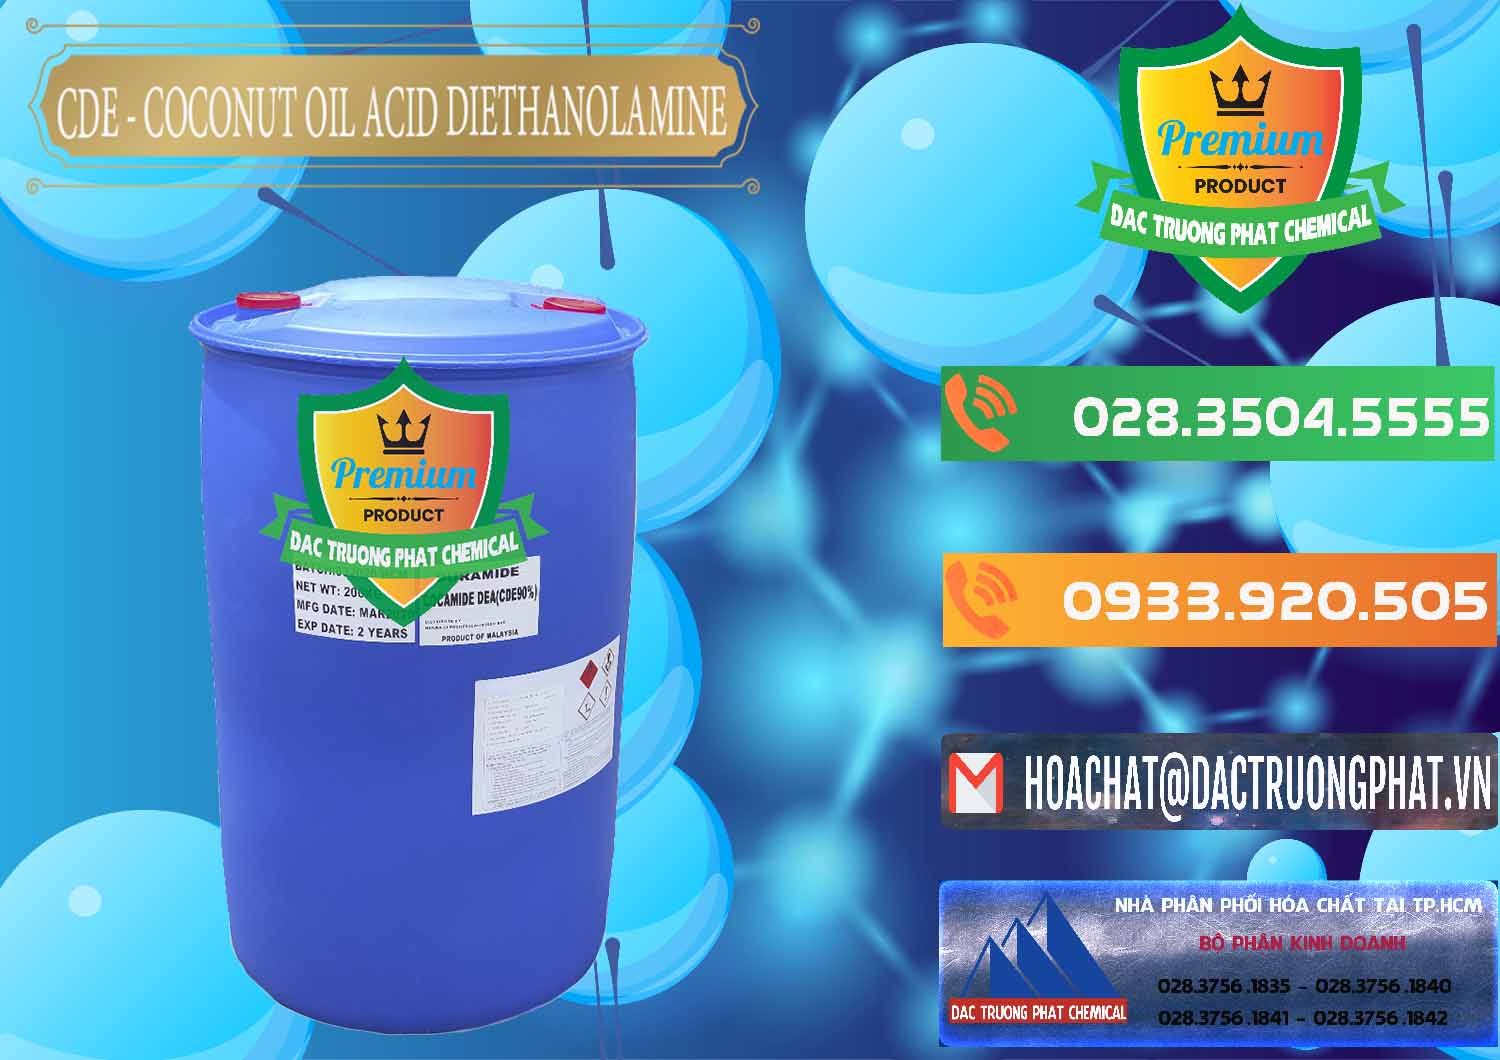 Cty nhập khẩu & bán CDE - Coconut Oil Acid Diethanolamine Mã Lai Malaysia - 0311 - Công ty chuyên kinh doanh _ cung cấp hóa chất tại TP.HCM - hoachatxulynuoc.com.vn